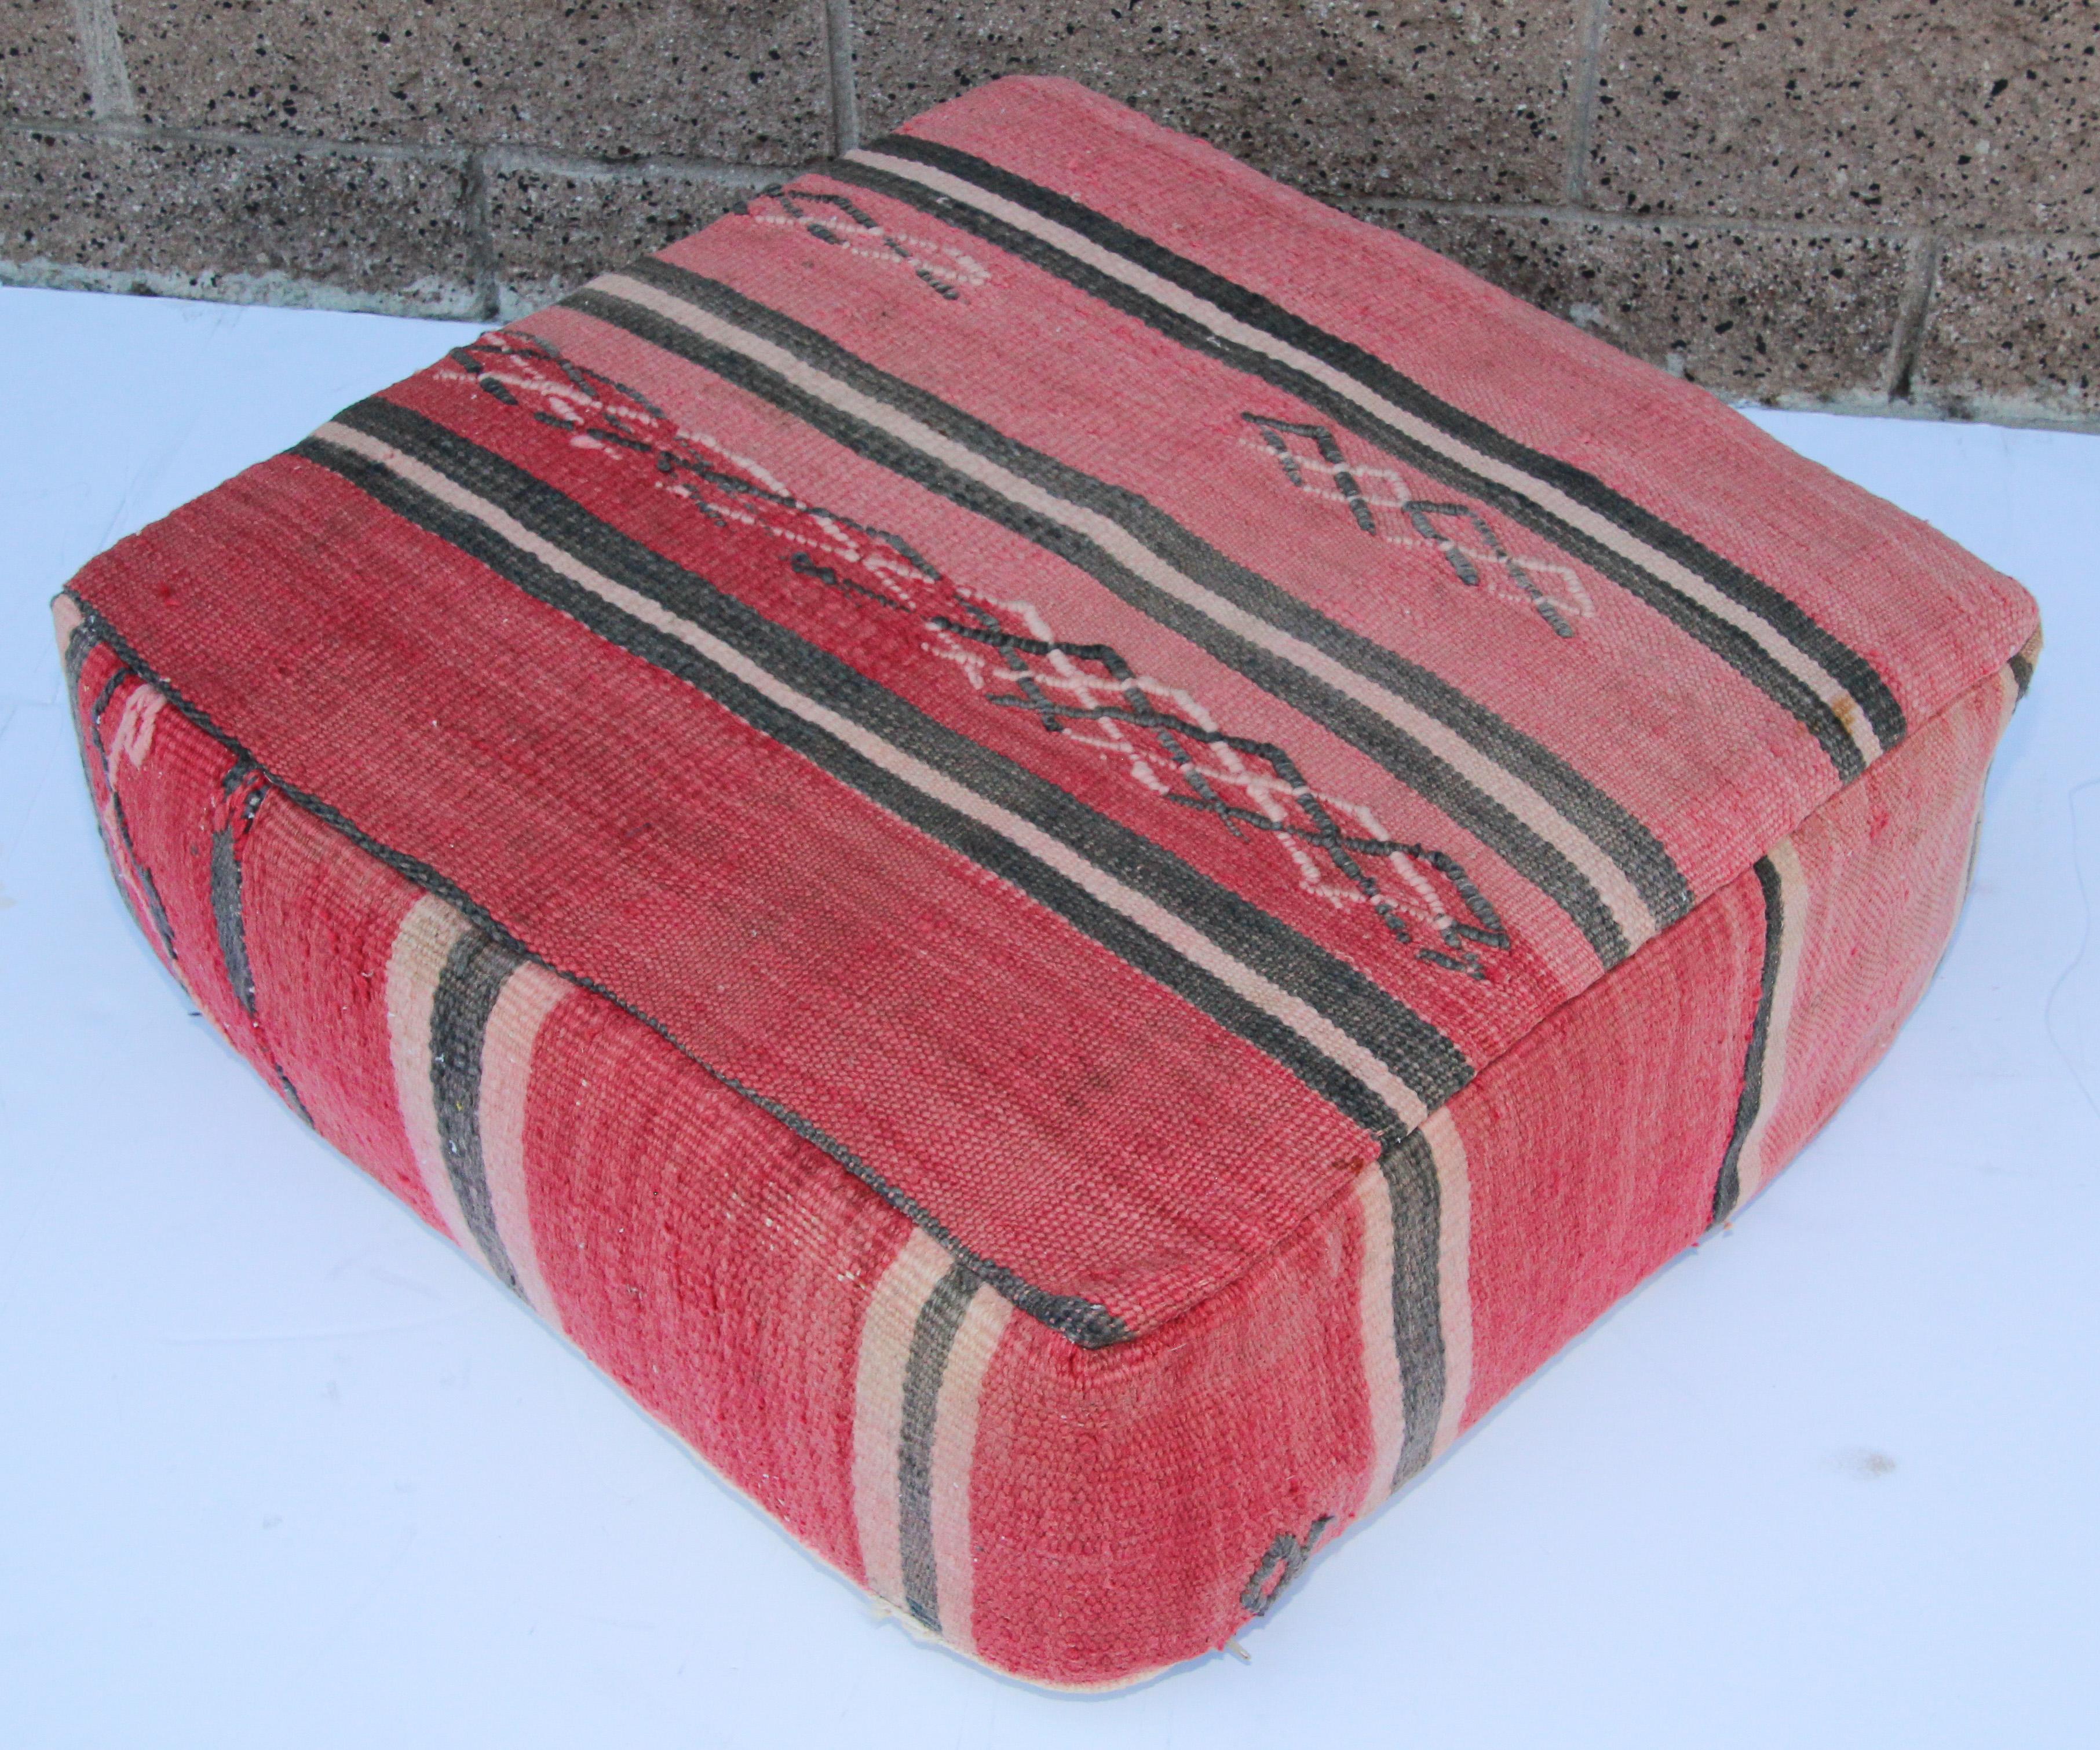 Marokkanisches Vintage-Sitzkissen aus einem Berber-Stammesteppich.
Quadratische Form mit schönen verblassten Erdtönen für die Oberseite und satten warmen Streifenfarben für die Unterseite.
Eine tolle Ergänzung für jede böhmische oder moderne